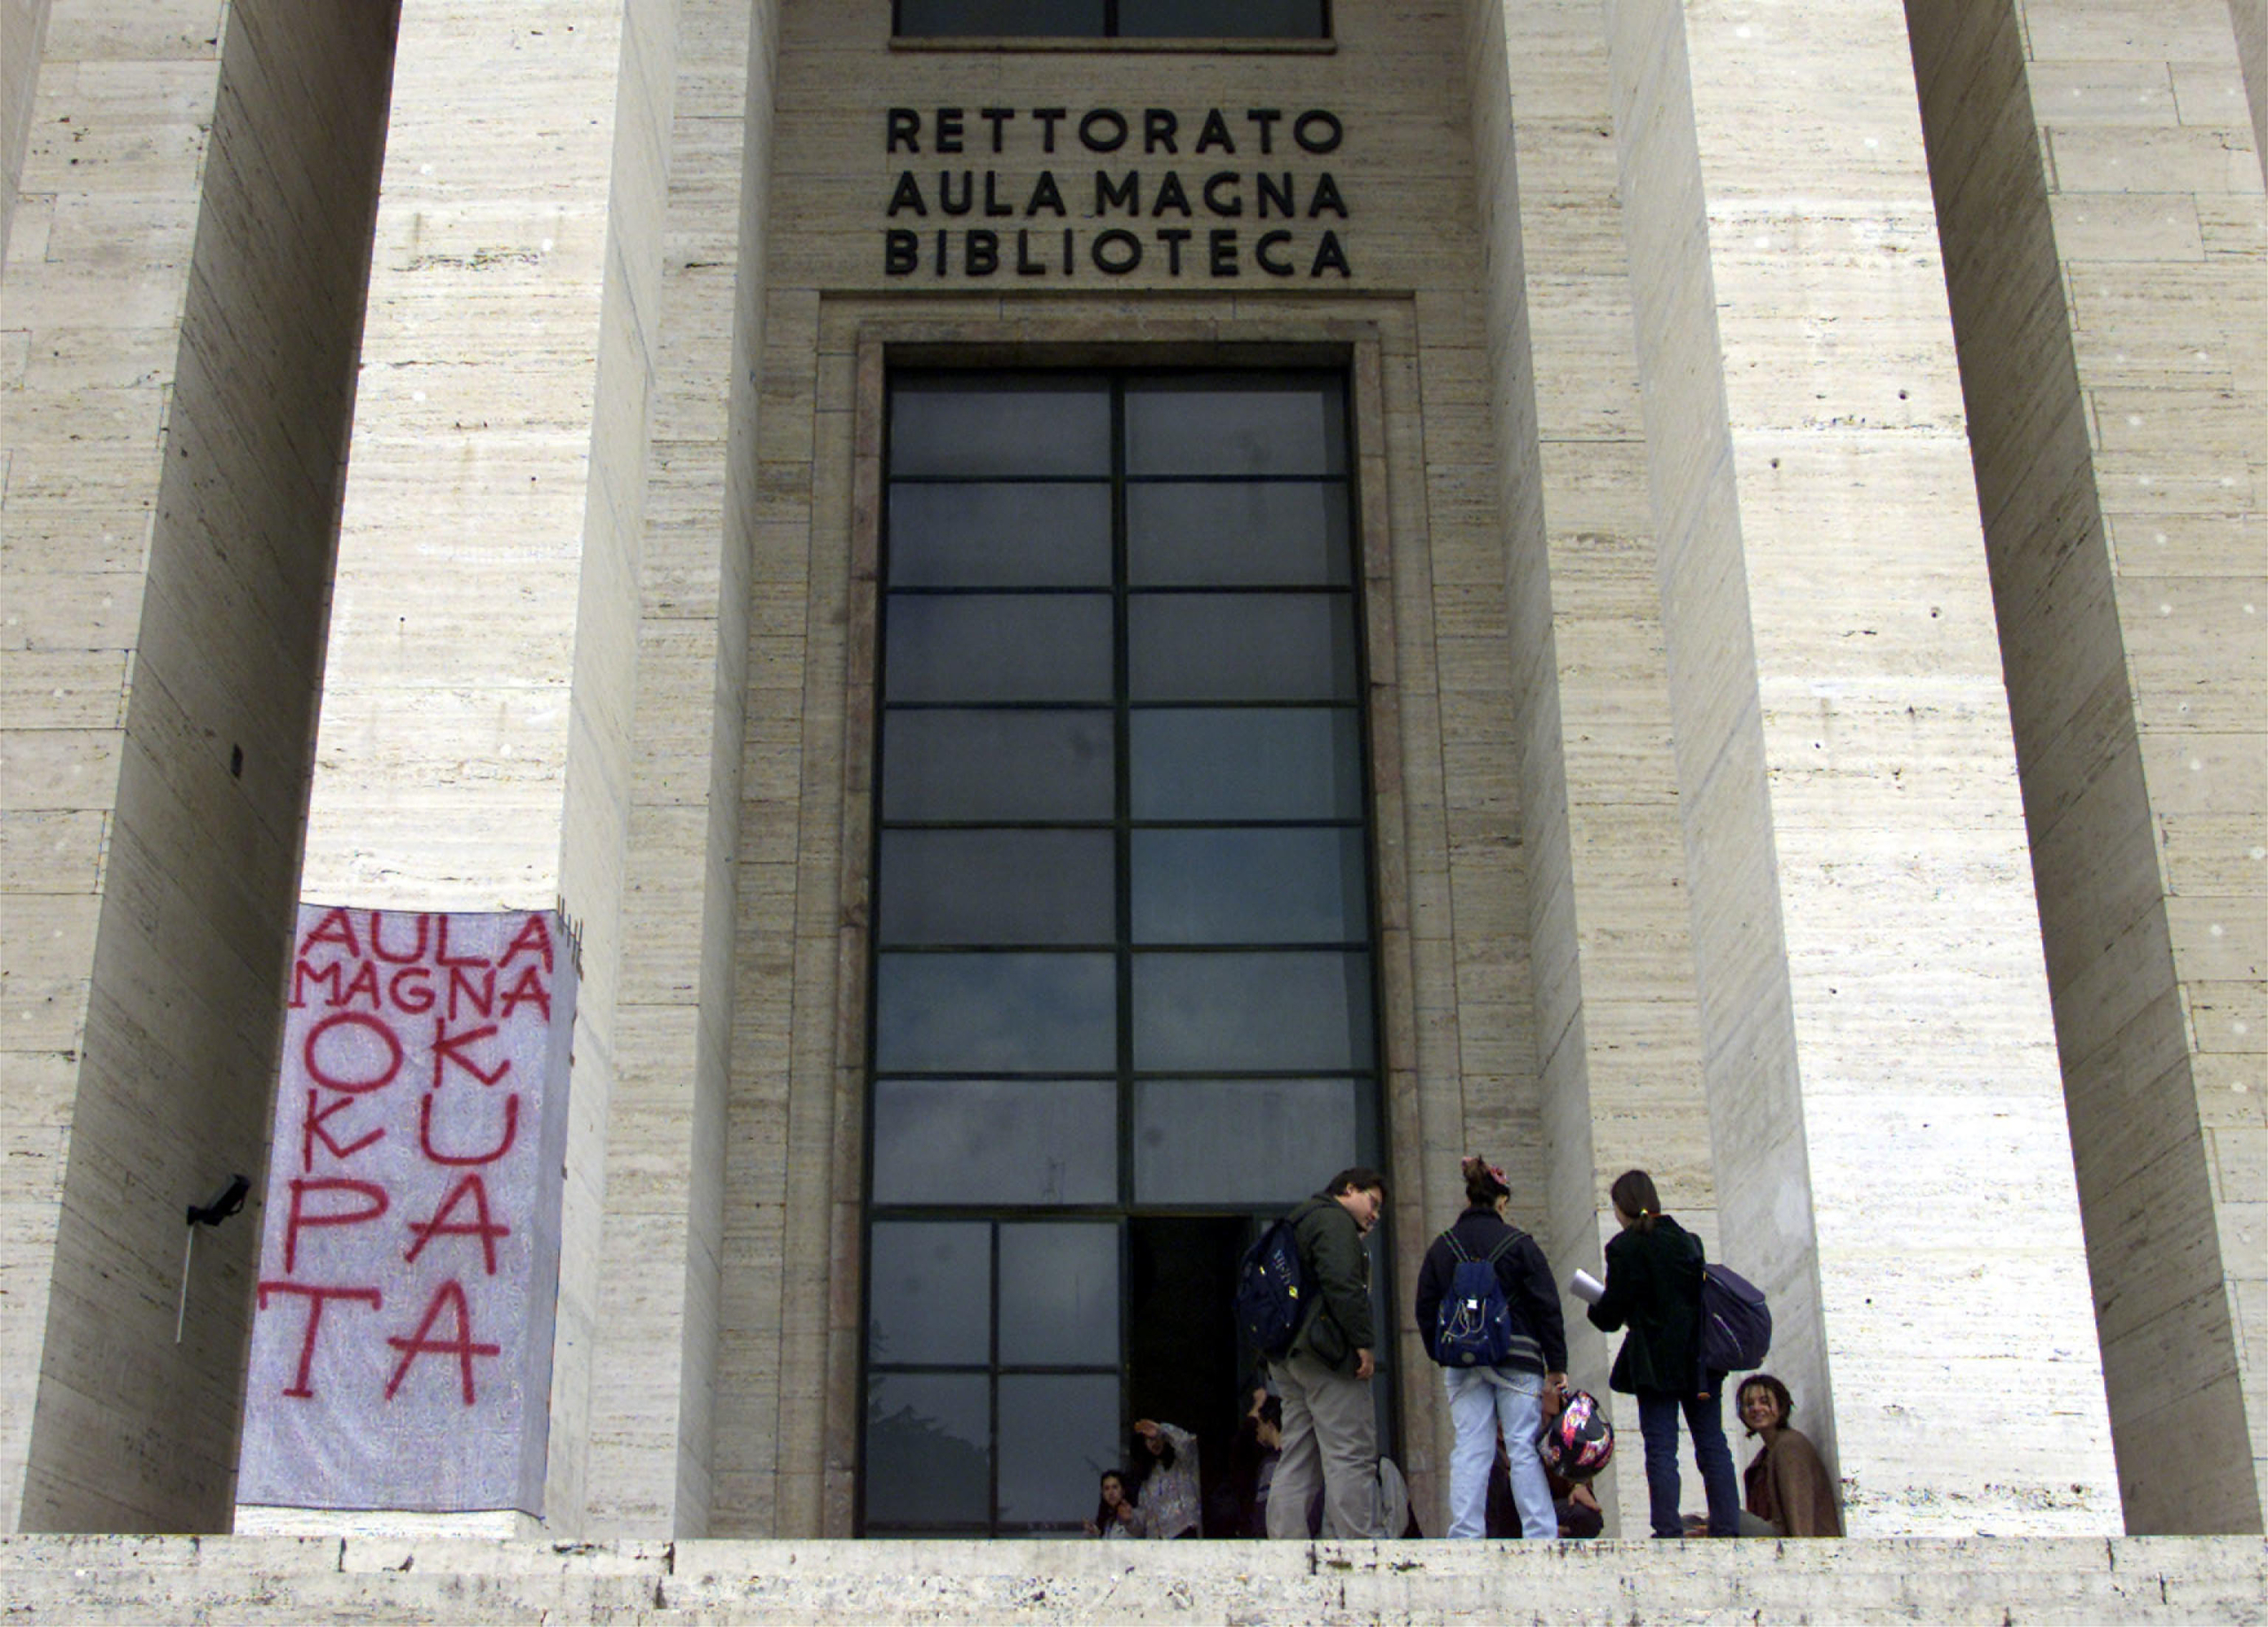 20010328-ROMA-CRO: LA SAPIENZA: CLIMA PIU' DISTESO, STUDENTI IN ASSEMBLEA.     L' ingresso dell' Aula Magna del Rettorato dell' universita' la Sapienza di Roma, dove gli studenti sono riuniti in assemblea.      GIUSEPPE GIGLIA / ANSA / PAL